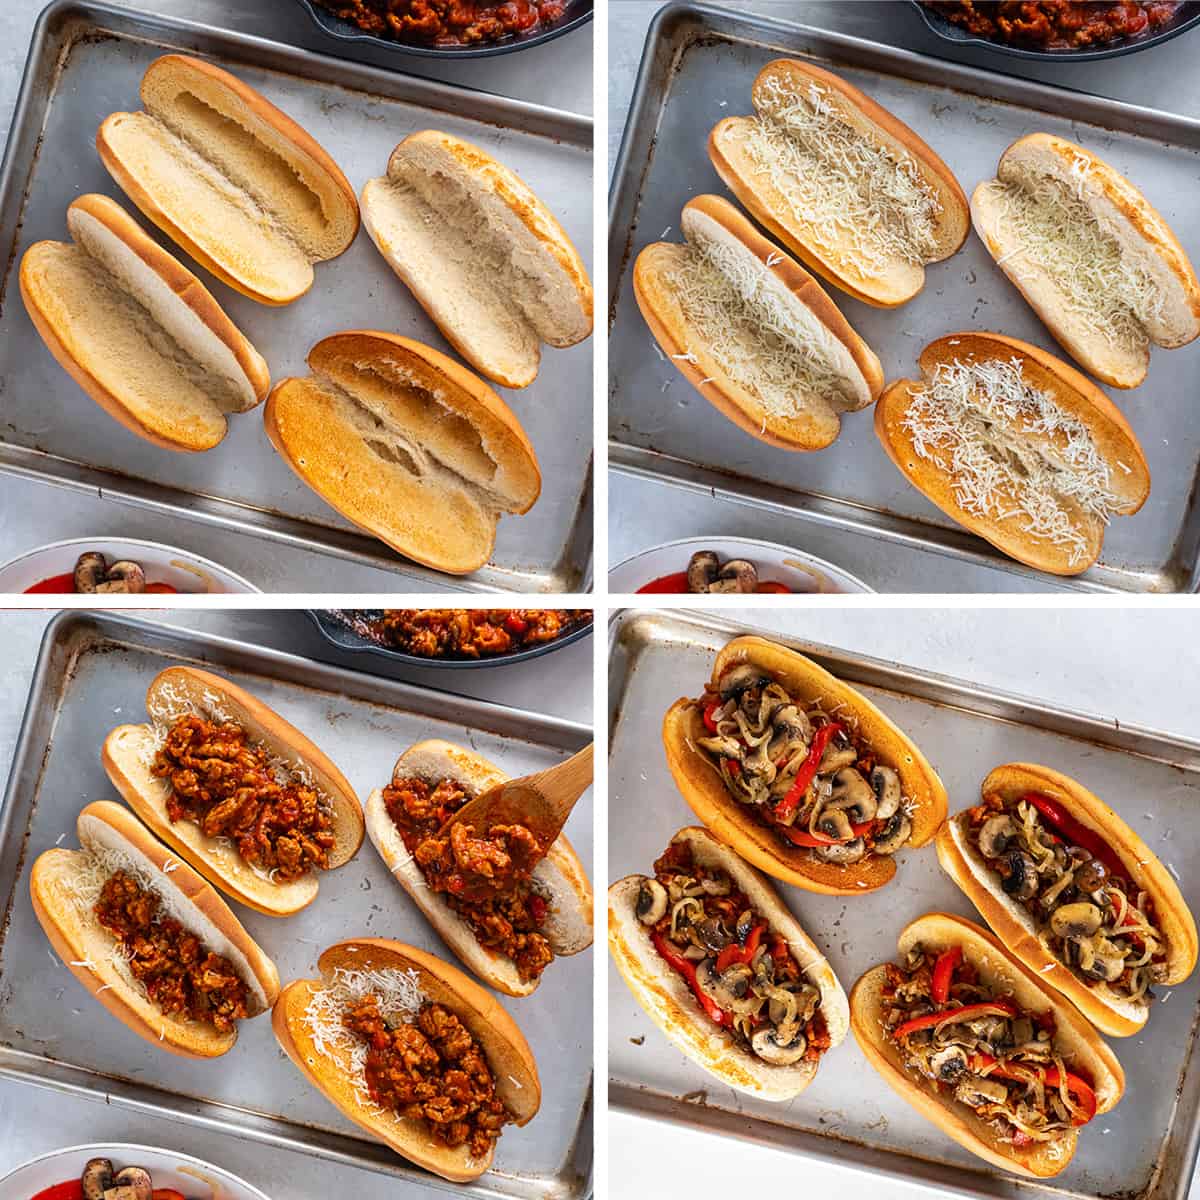 Vier Bilder zeigen Käse, italienische Wurst, Paprika, Zwiebeln und Pilze, die in geröstete Hoagie-Brötchen geschichtet werden.